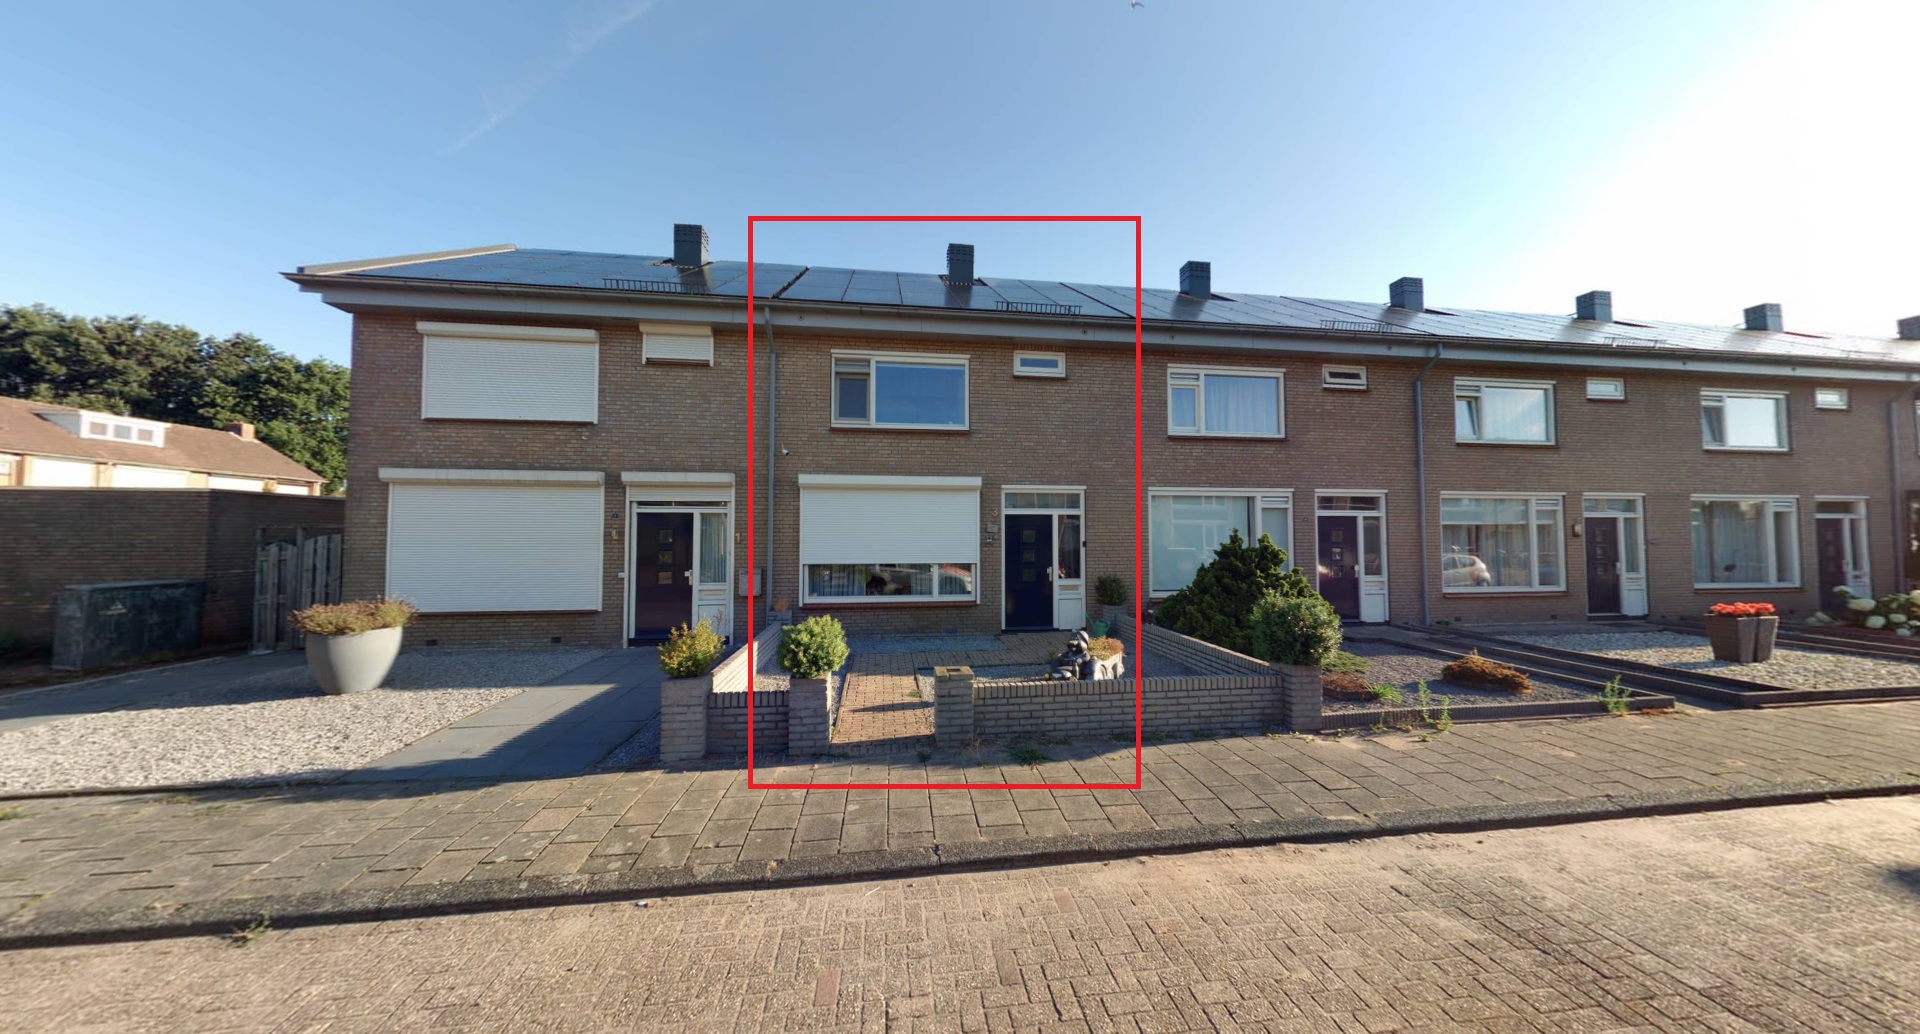 Collinsstraat 3, 5175 XD Loon op Zand, Nederland